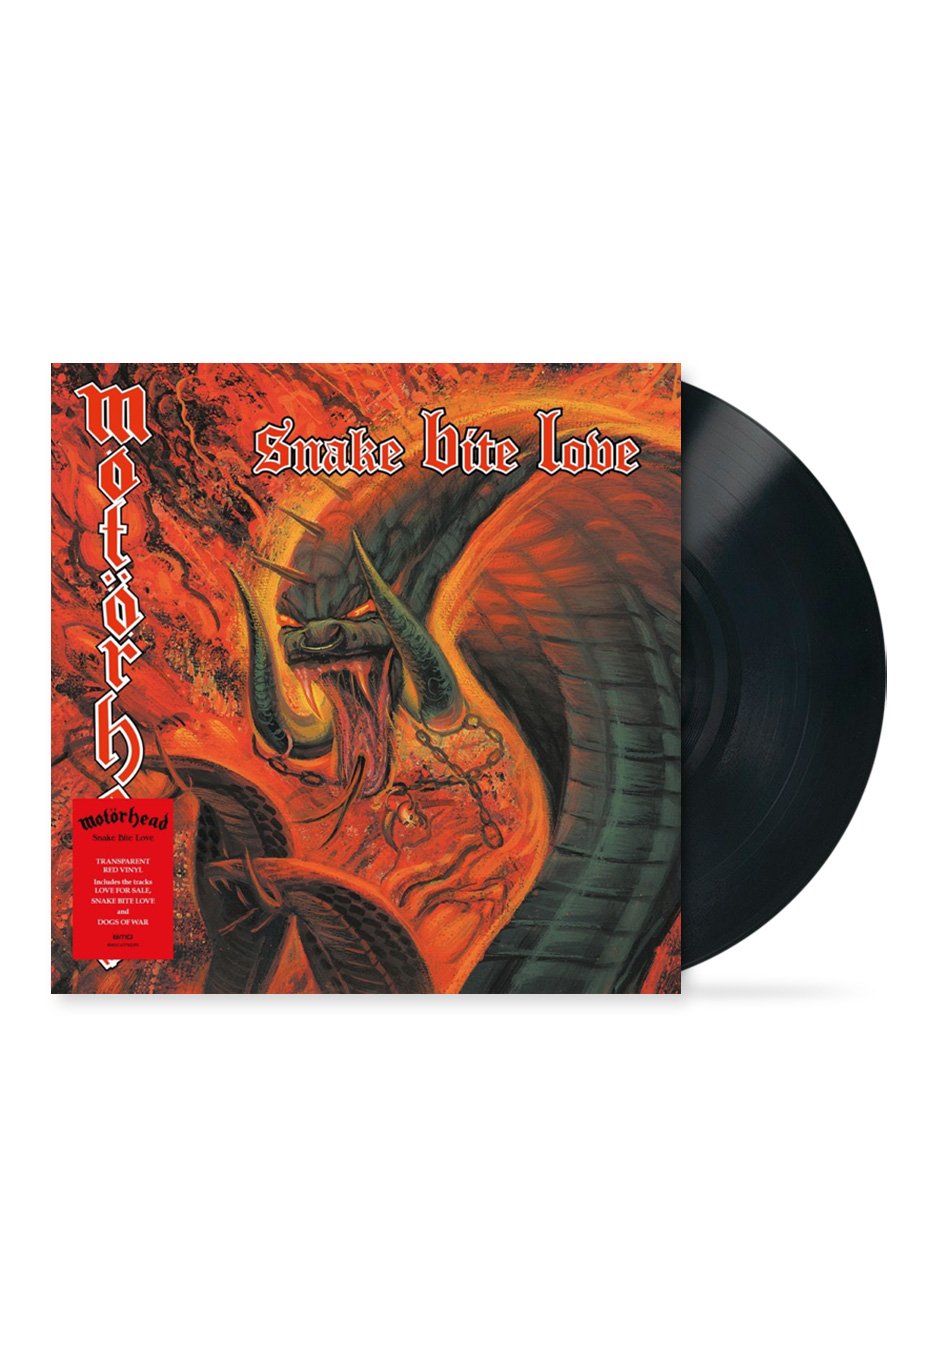 Motörhead - Snake Bite Love - Vinyl